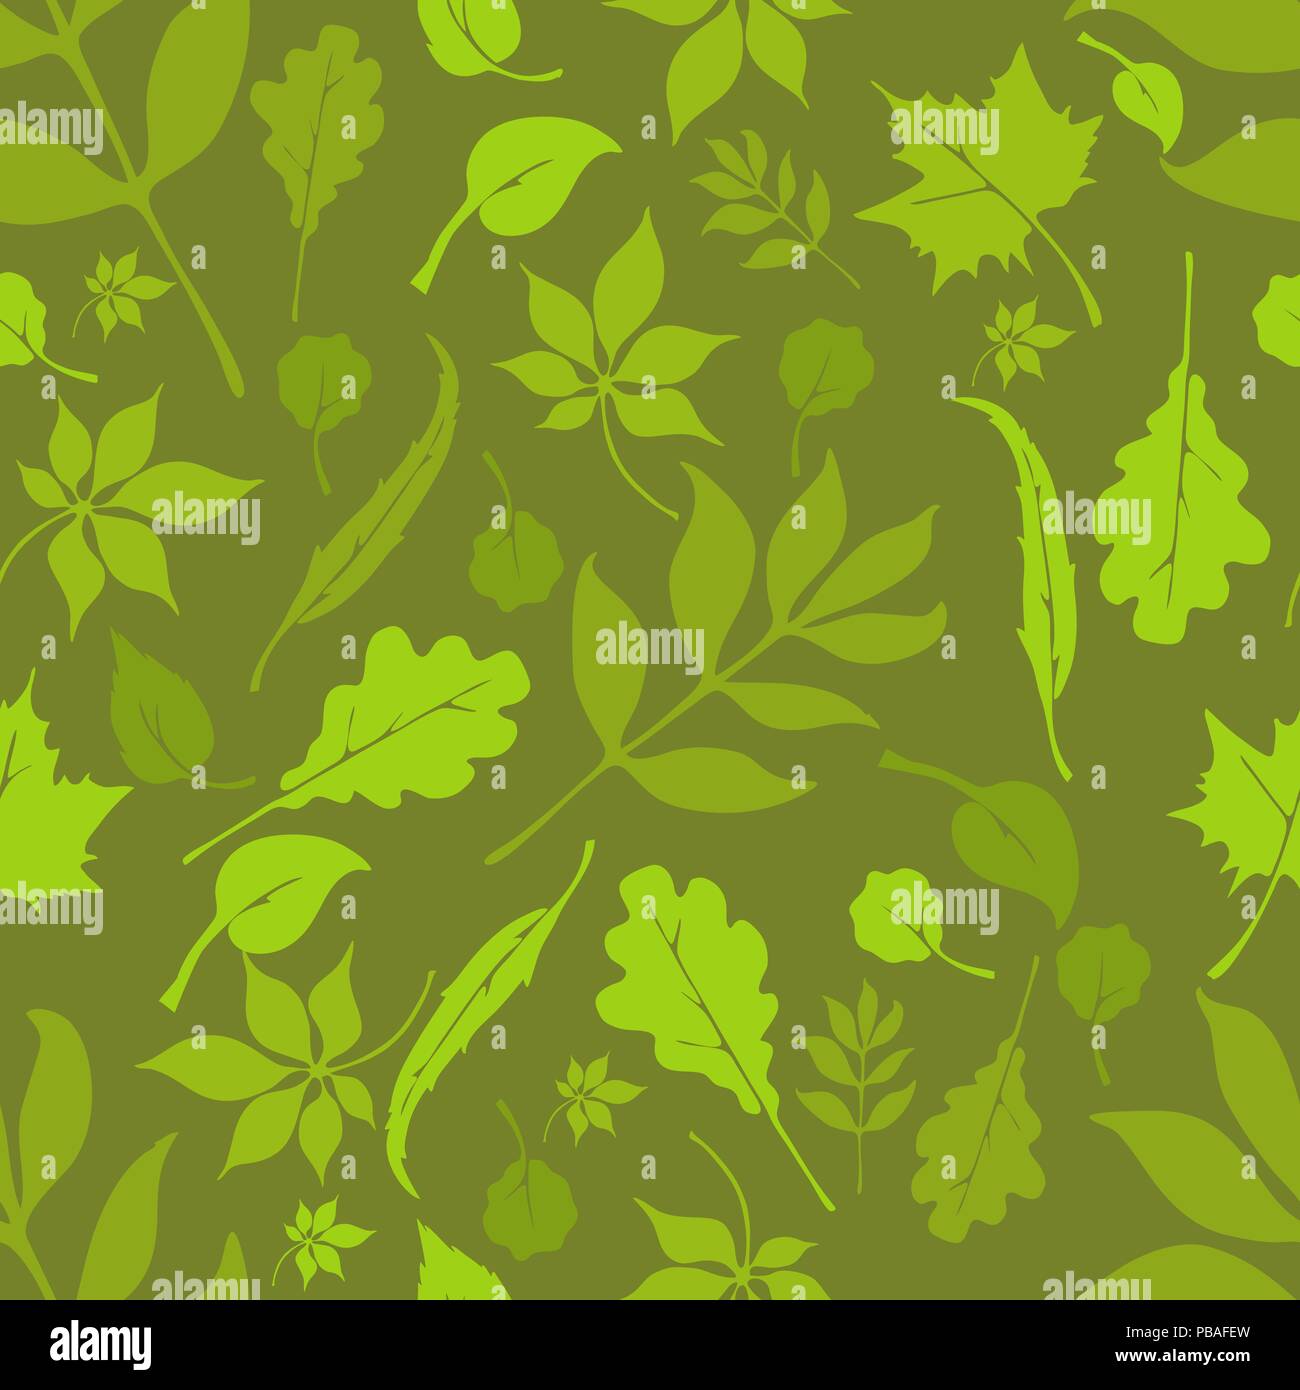 Russische Wald nahtlose Muster. Camouflage fabric. Quadratischen Format.  Blätter Textur. Europäischen Bäume Design. Eiche, Linde, Birke, Kastanien,  Weiden, Erlen Stock-Vektorgrafik - Alamy